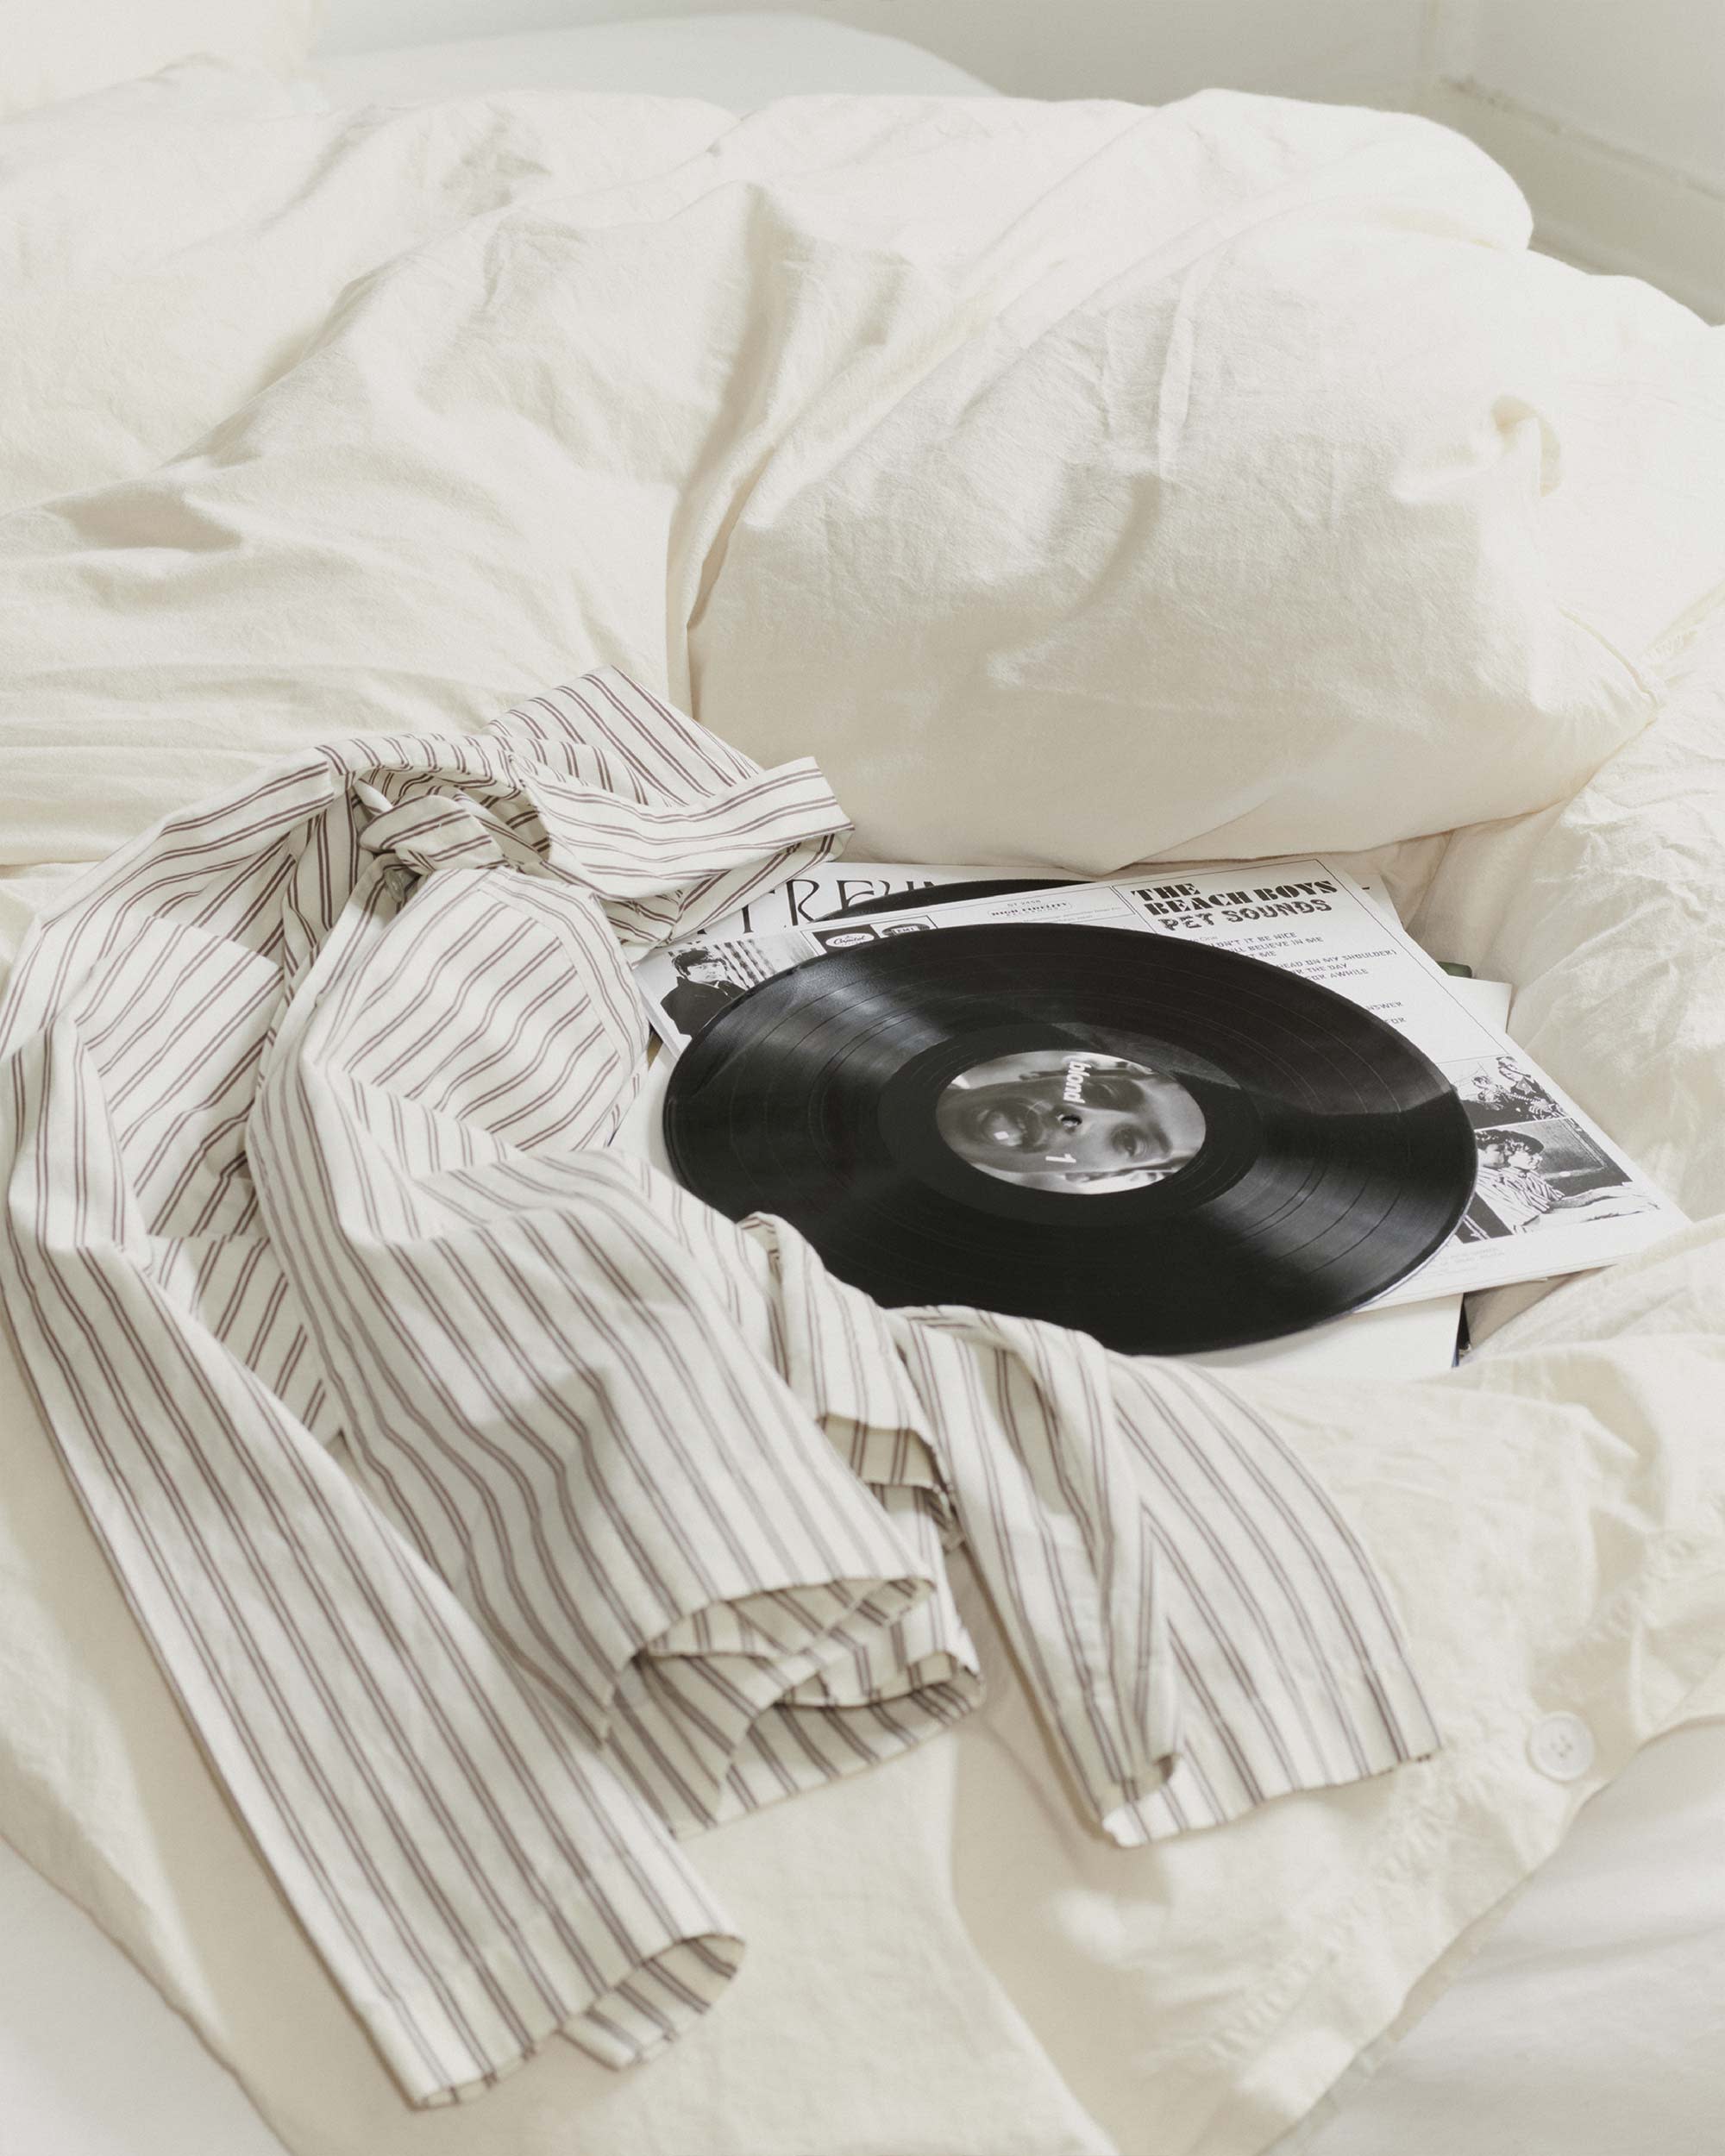 Hopper Stripes long-sleeved shirt on Broken White bedding